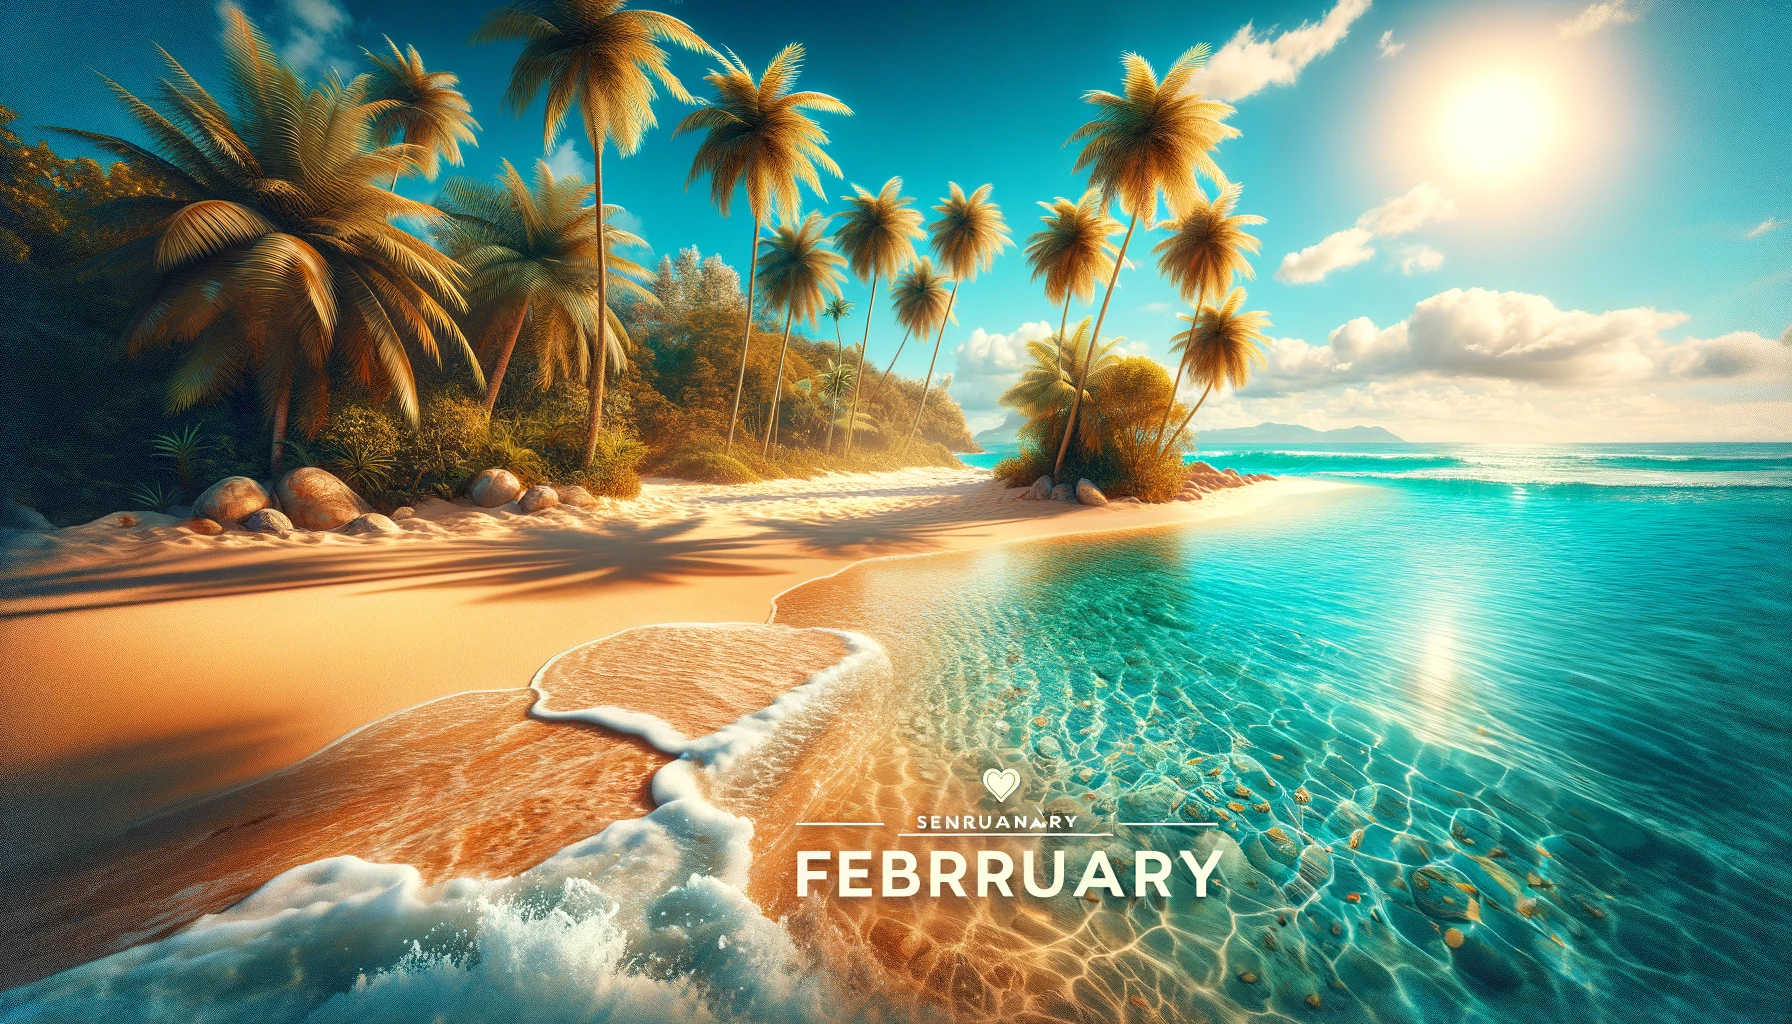 Tropikalna plaża z krystalicznie czystą wodą - idealne miejsce na wakacje w lutym